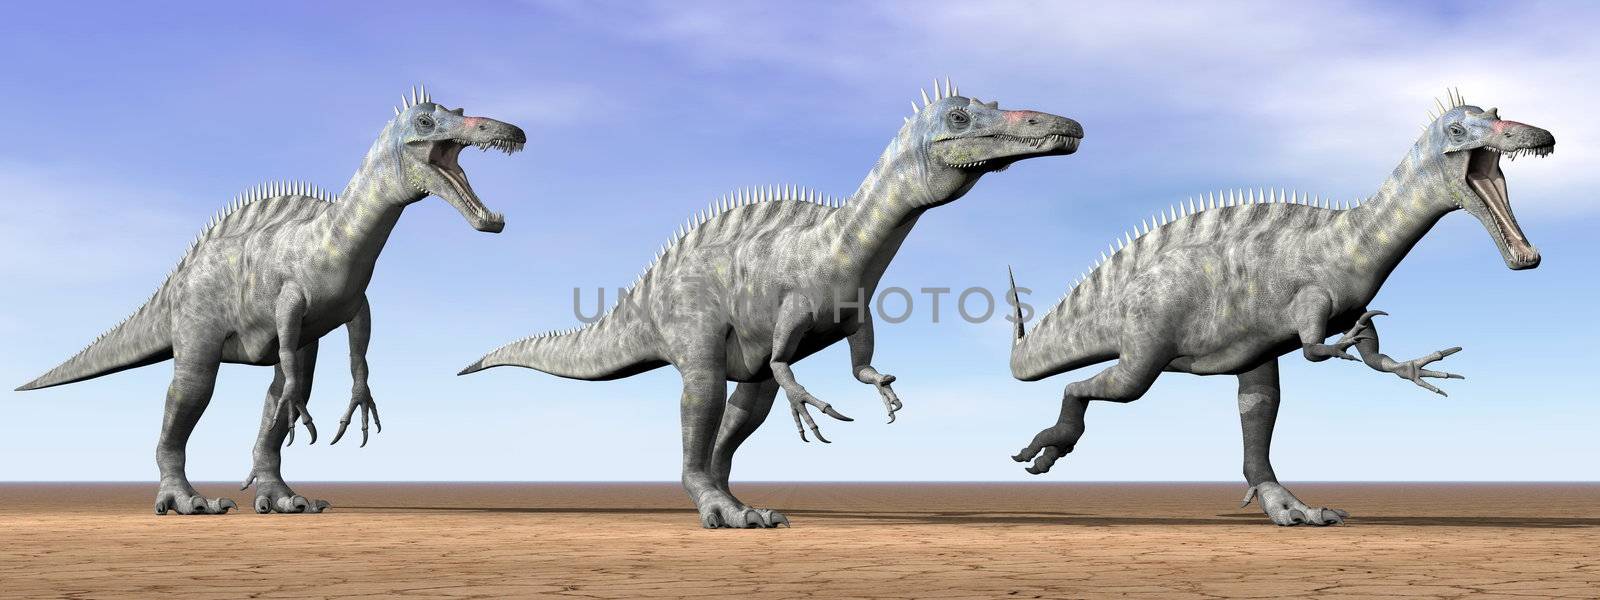 Suchomimus dinosaurs in the desert - 3D render by Elenaphotos21